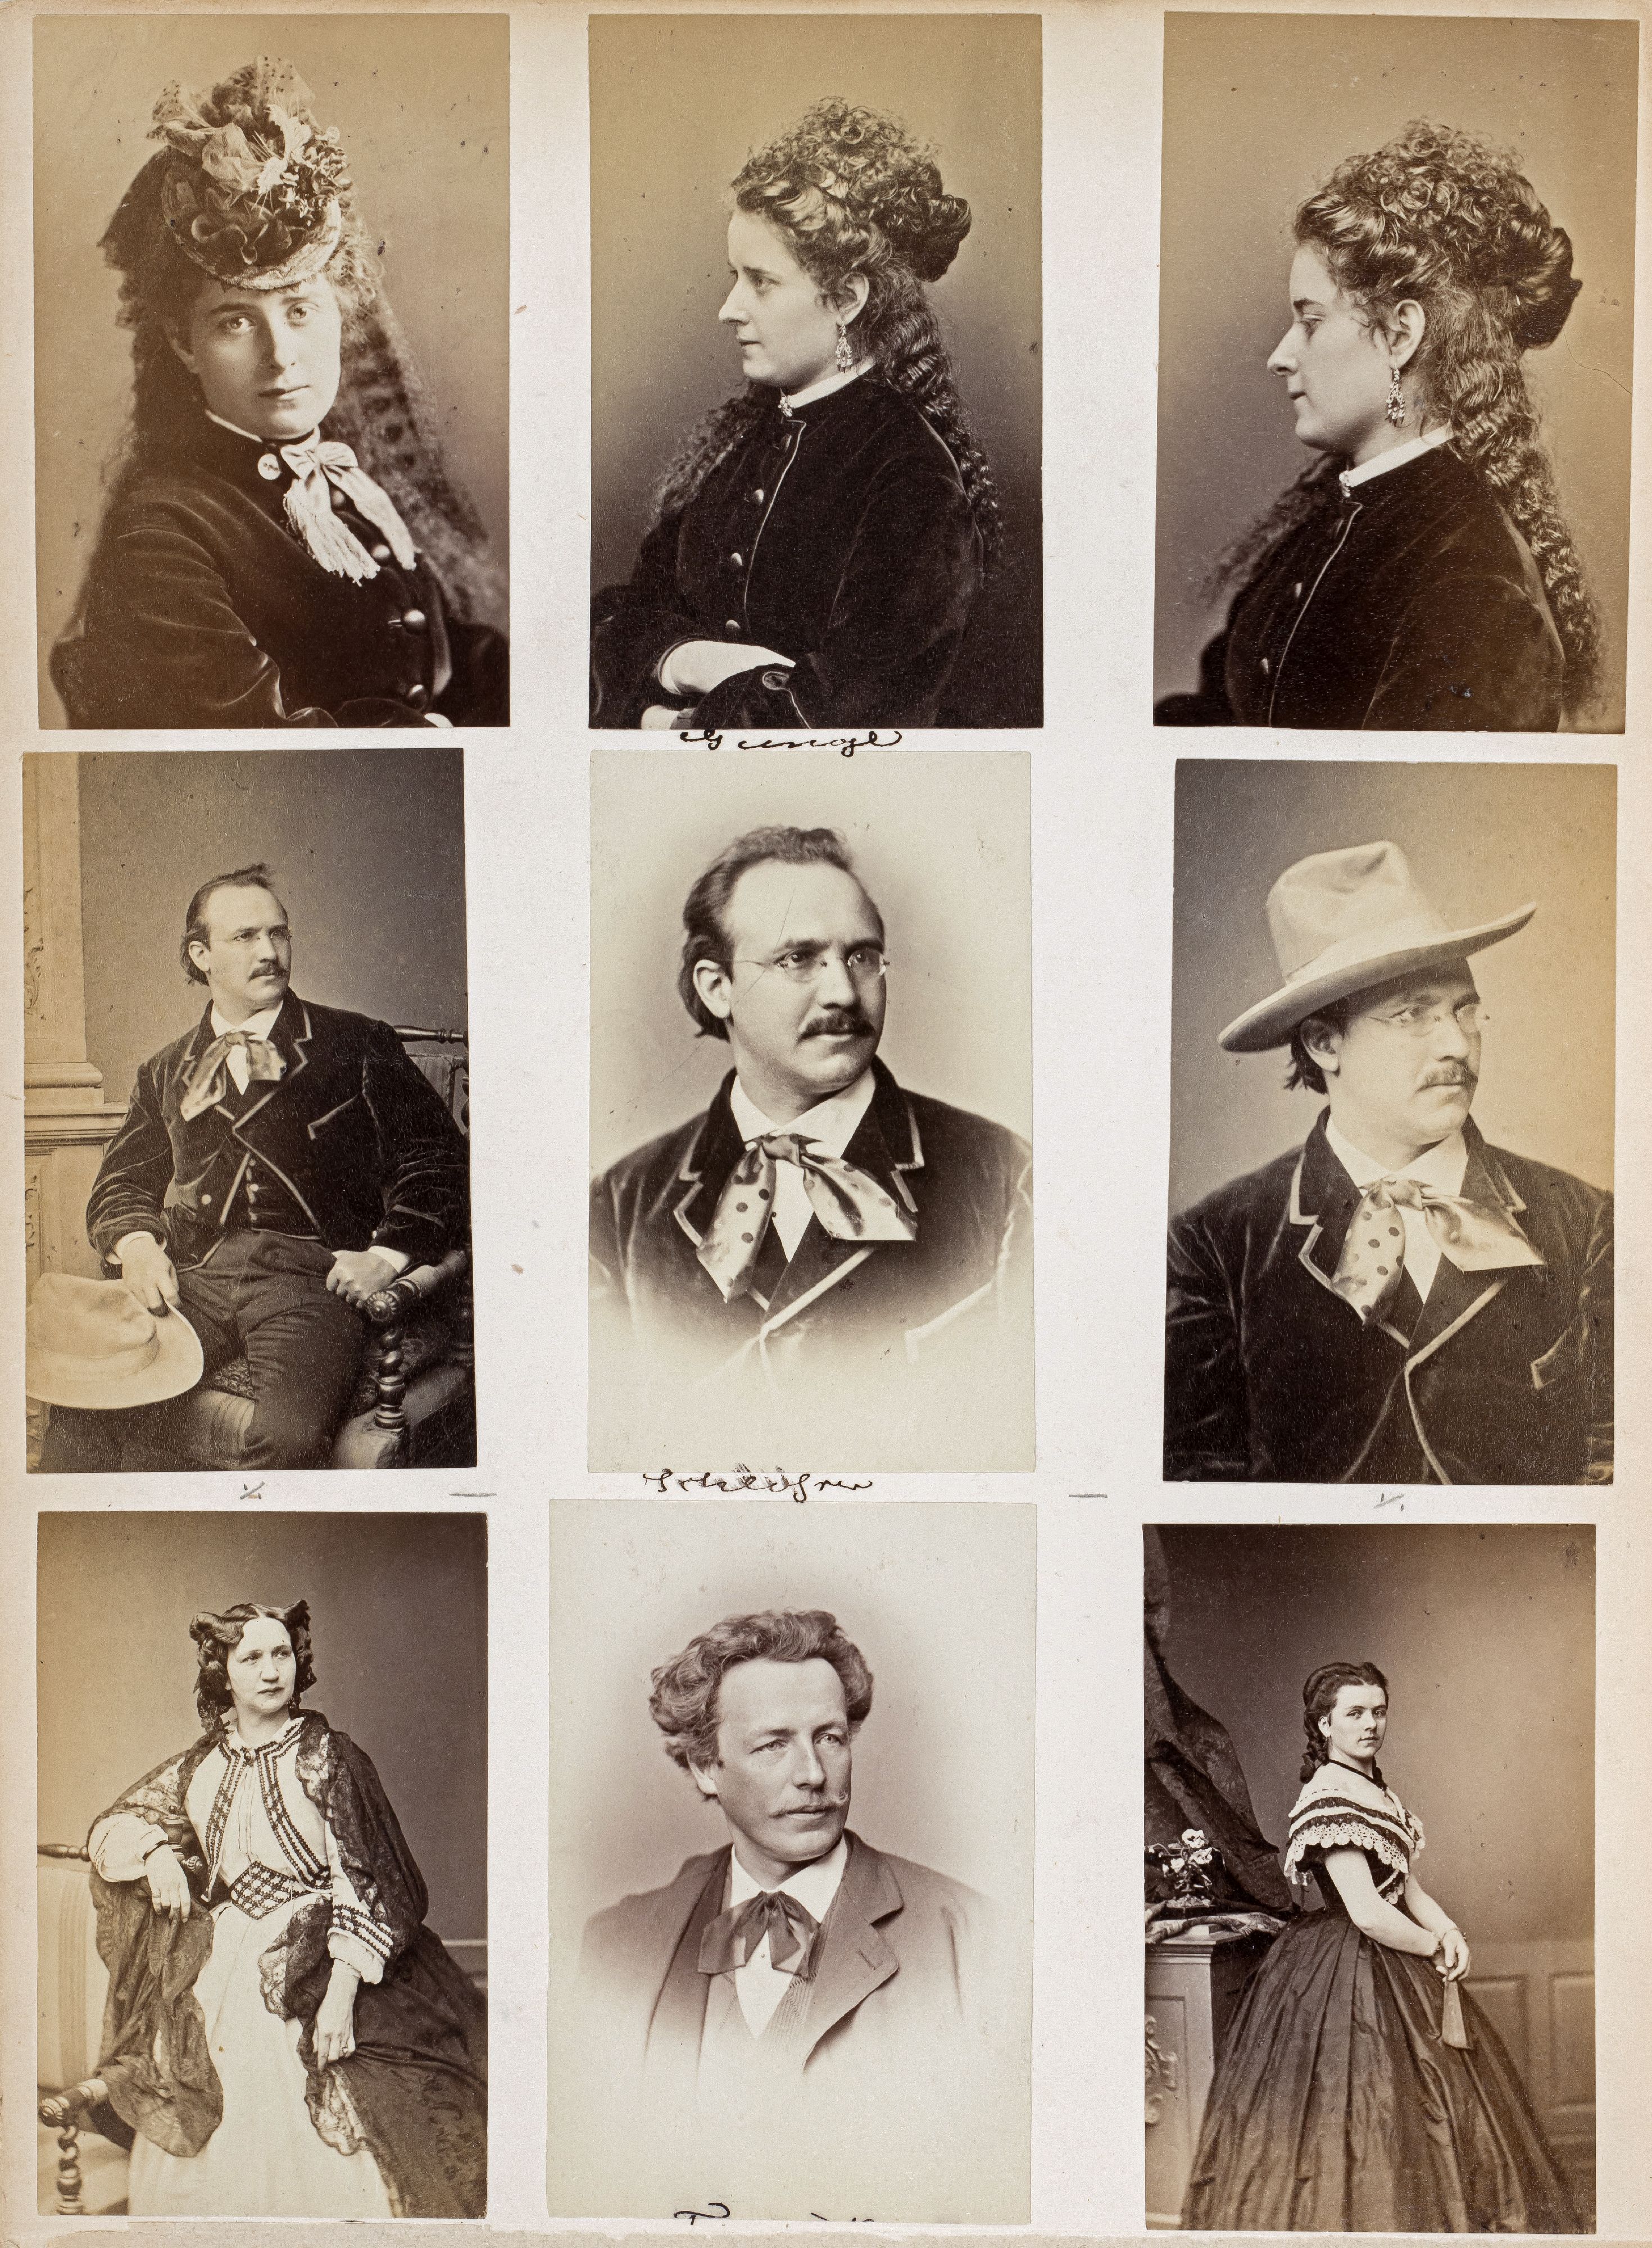 FOTOGRAFIE | Hanfstaengl, Franz | 1807 Baiernrain bei Tölz - 1877 München - Image 11 of 25